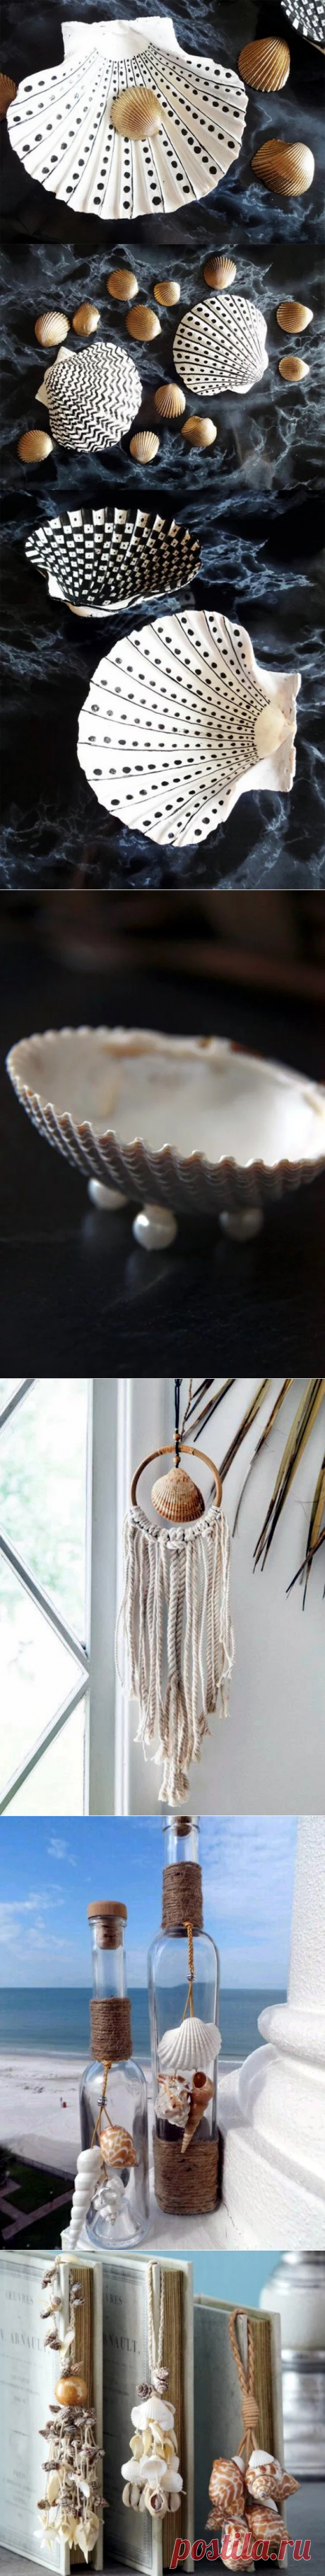 Сохраним теплые воспоминания с моря - декор ракушками | Интерьер | Myhouse